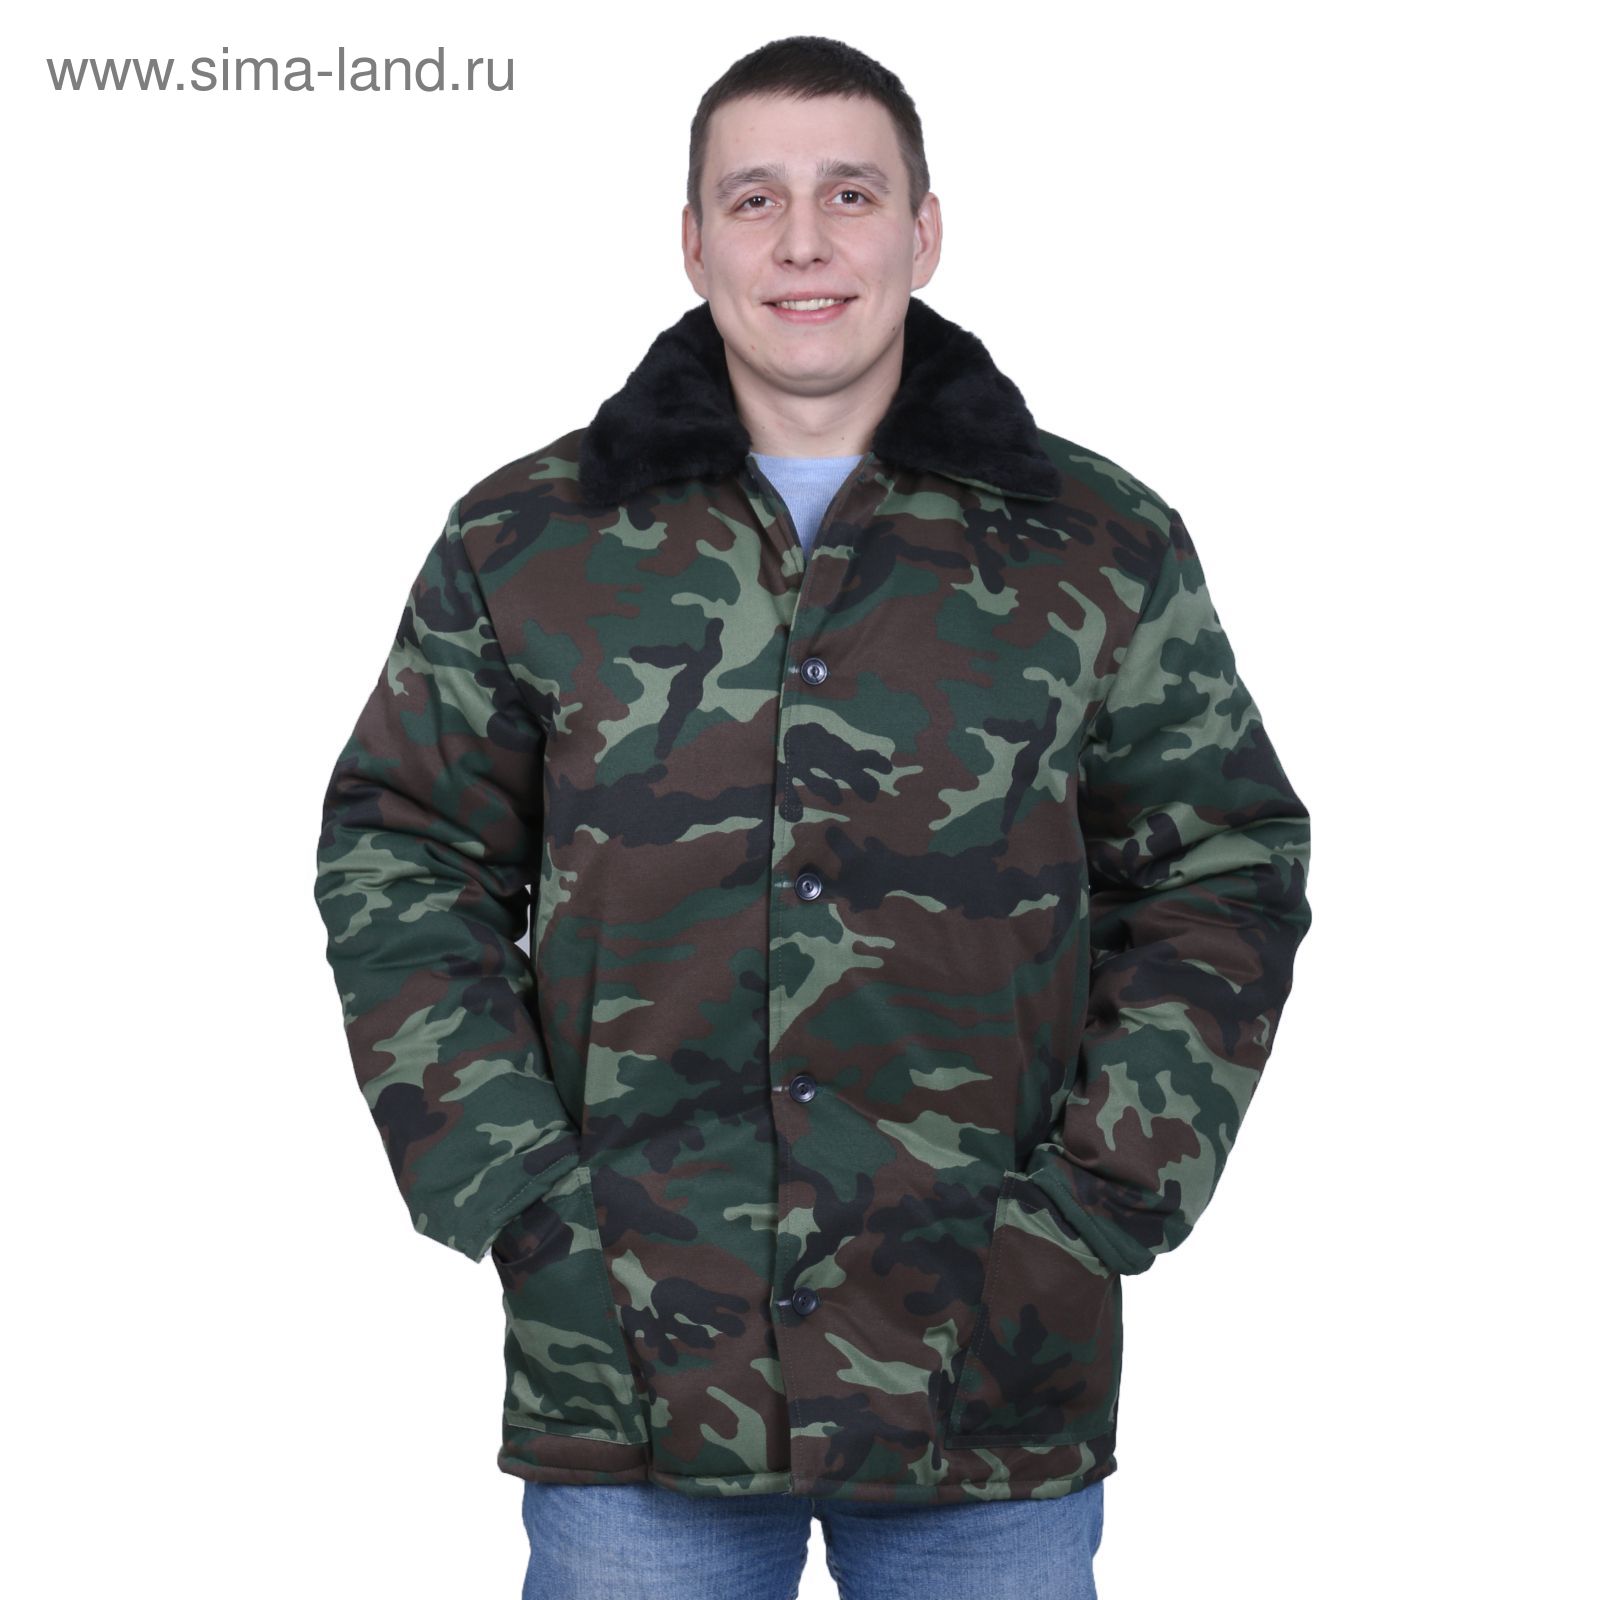 Куртка утеплённая, размер 44, рост 170-176 см, цвет зелёный